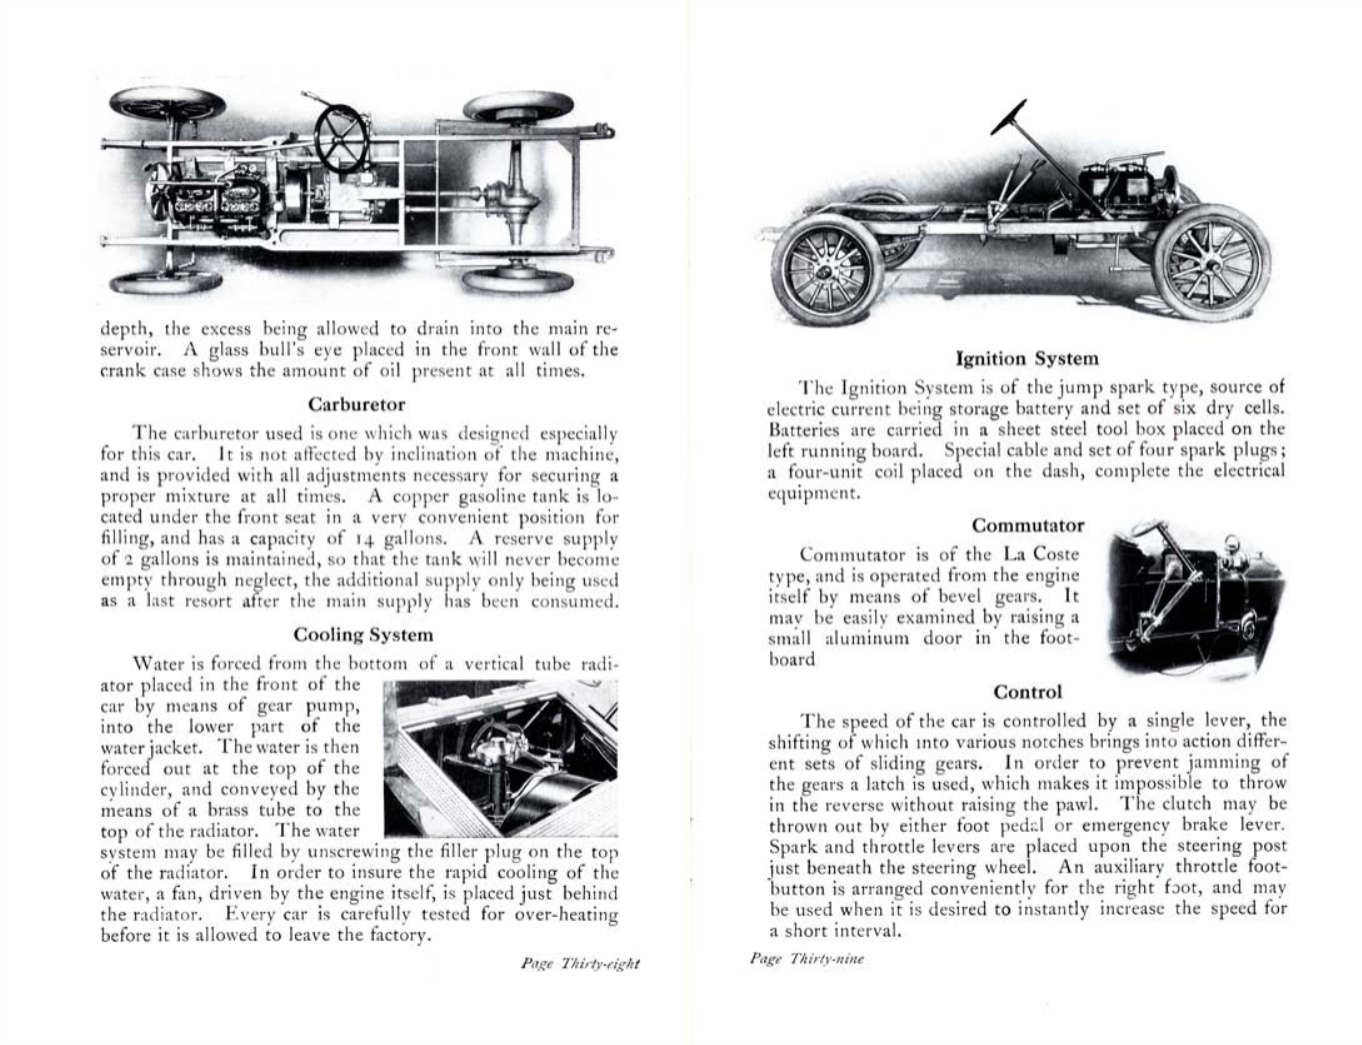 n_1907 Oldsmobile Booklet-38-39.jpg